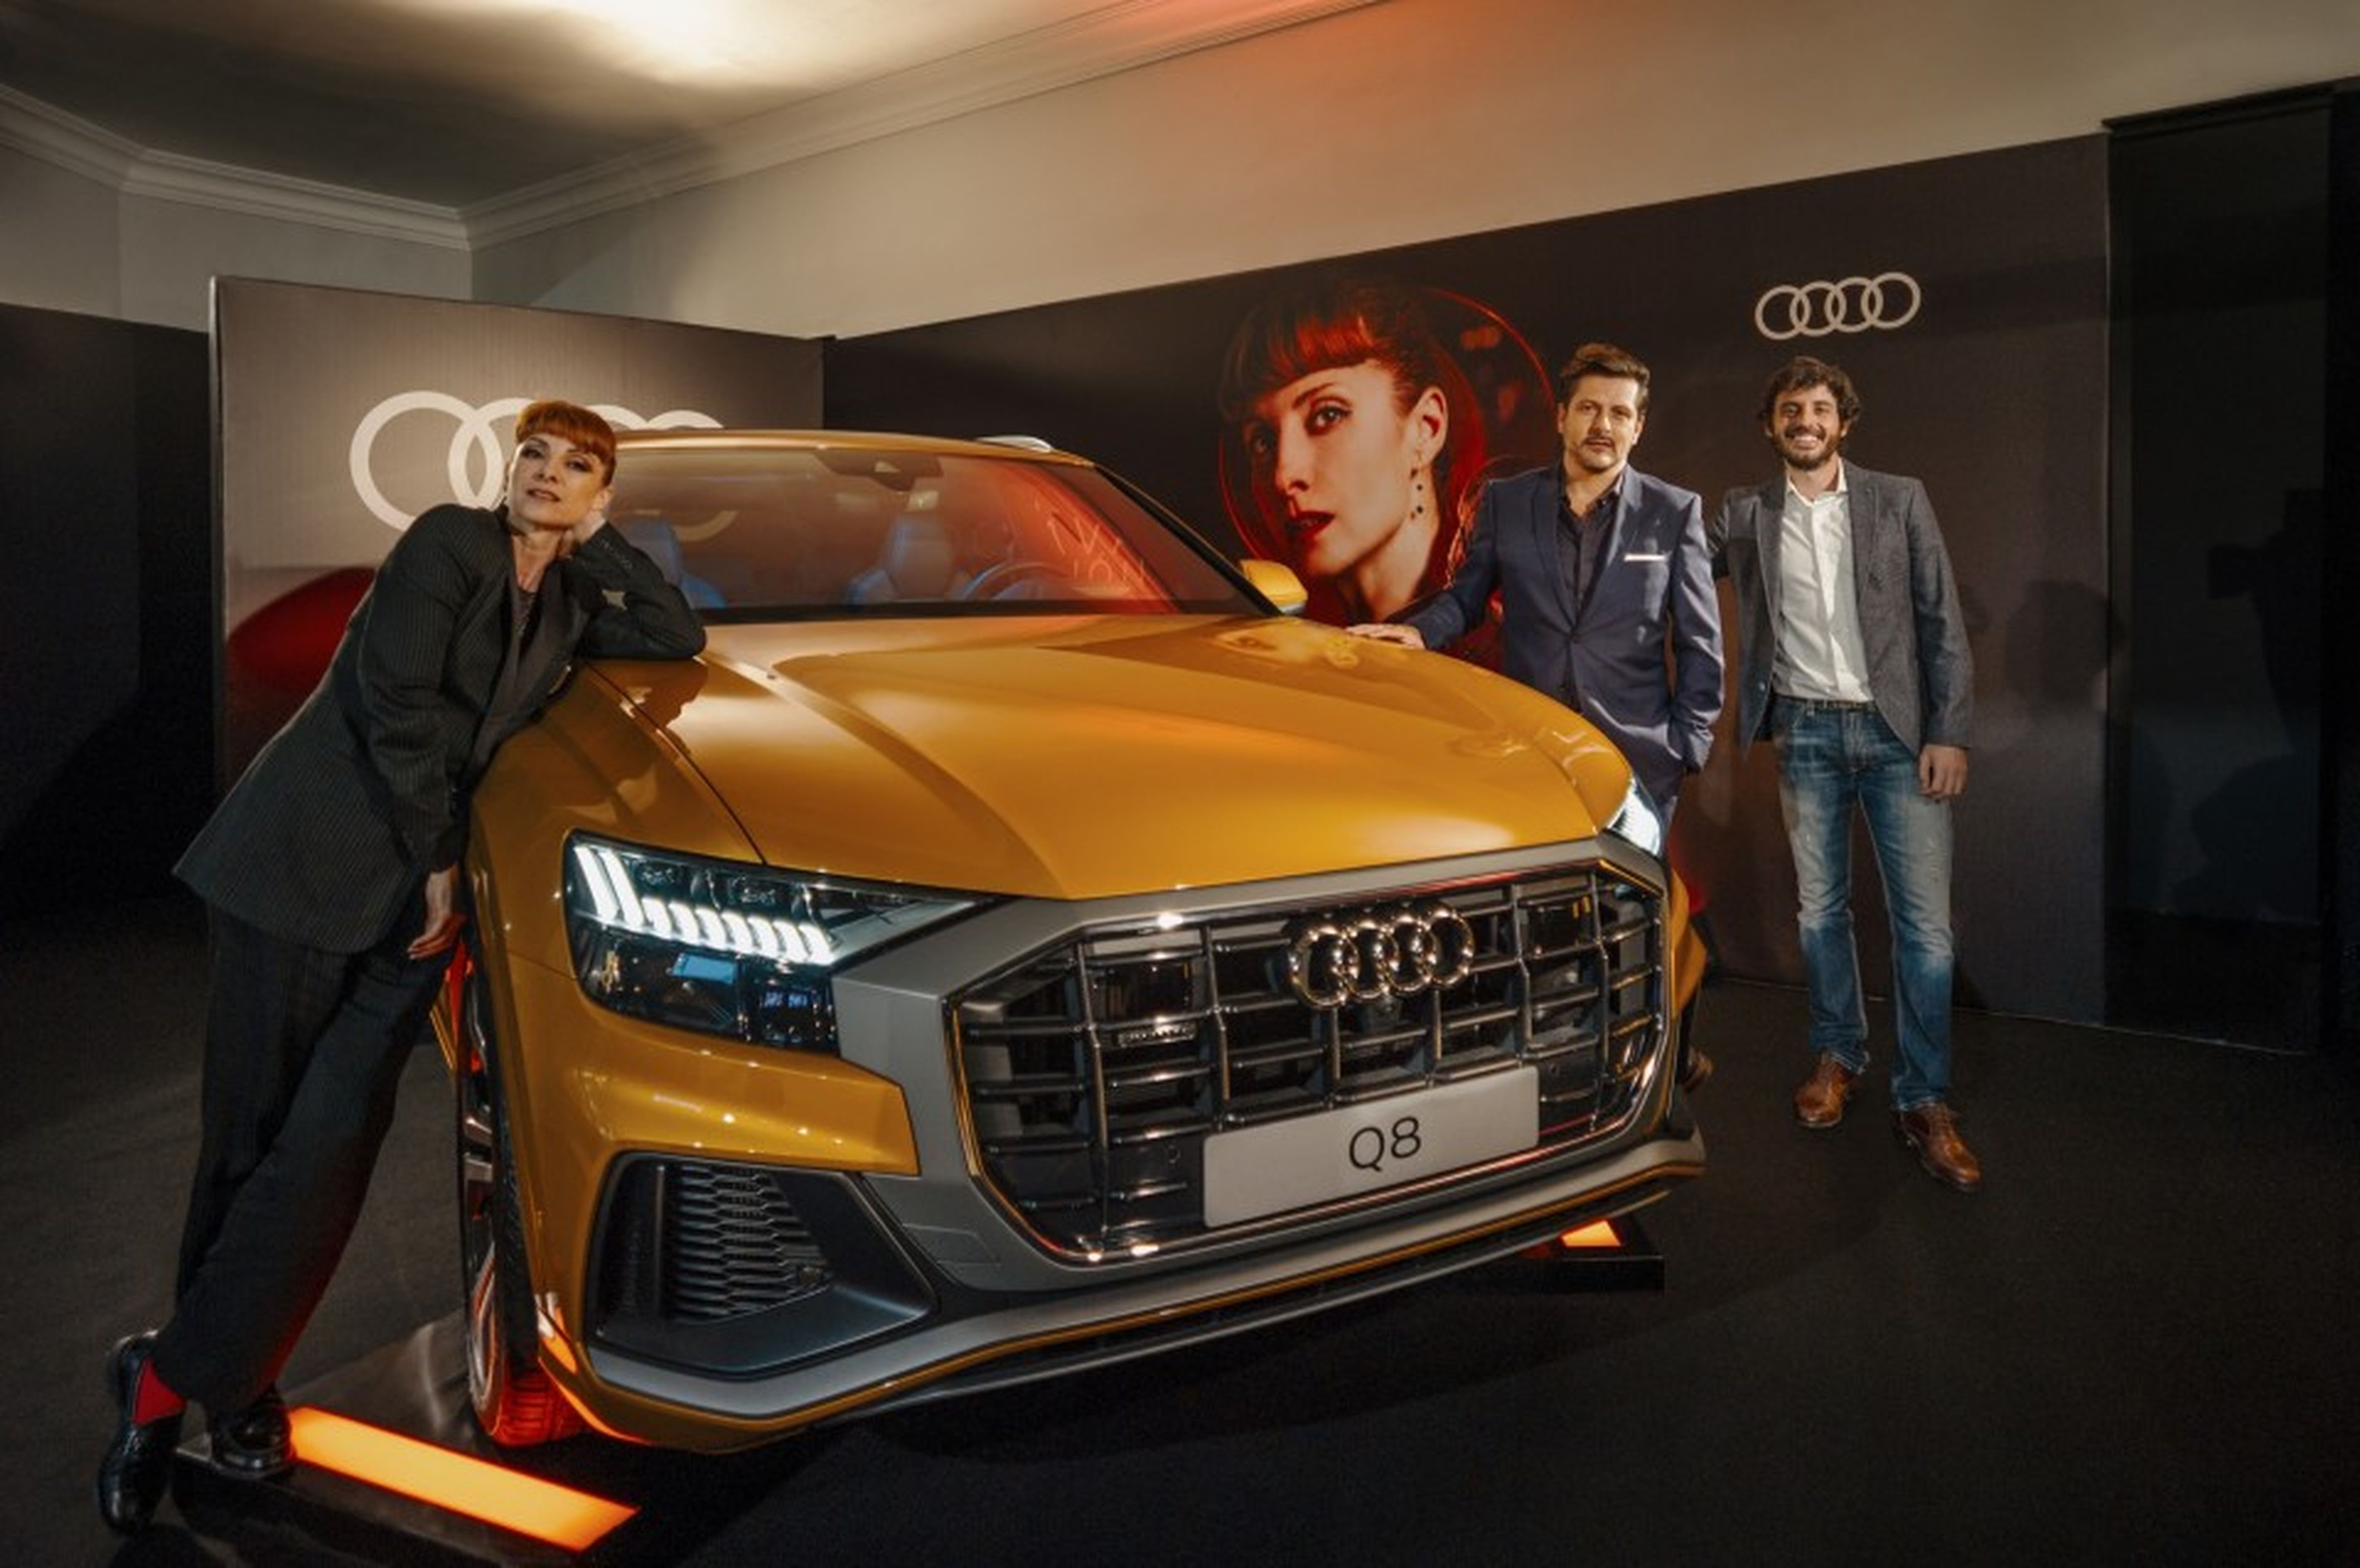 Estreno en Madrid de “La octava dimensión”, con el nuevo Audi Q8 como protagonista